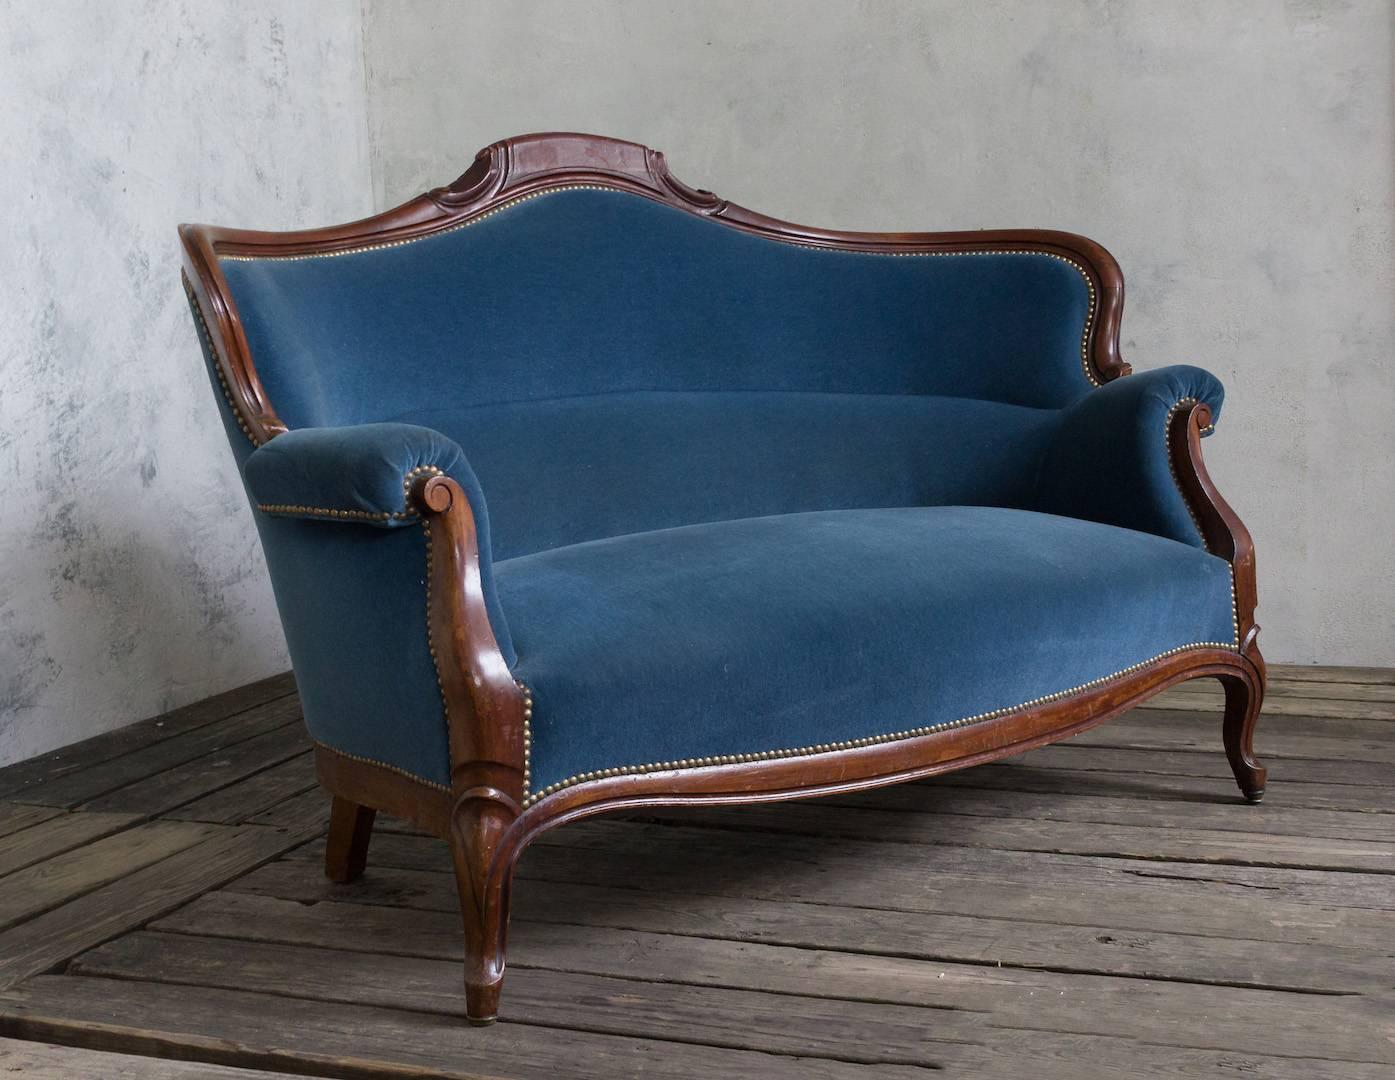 19th Century Sofa (Louis Philippe)